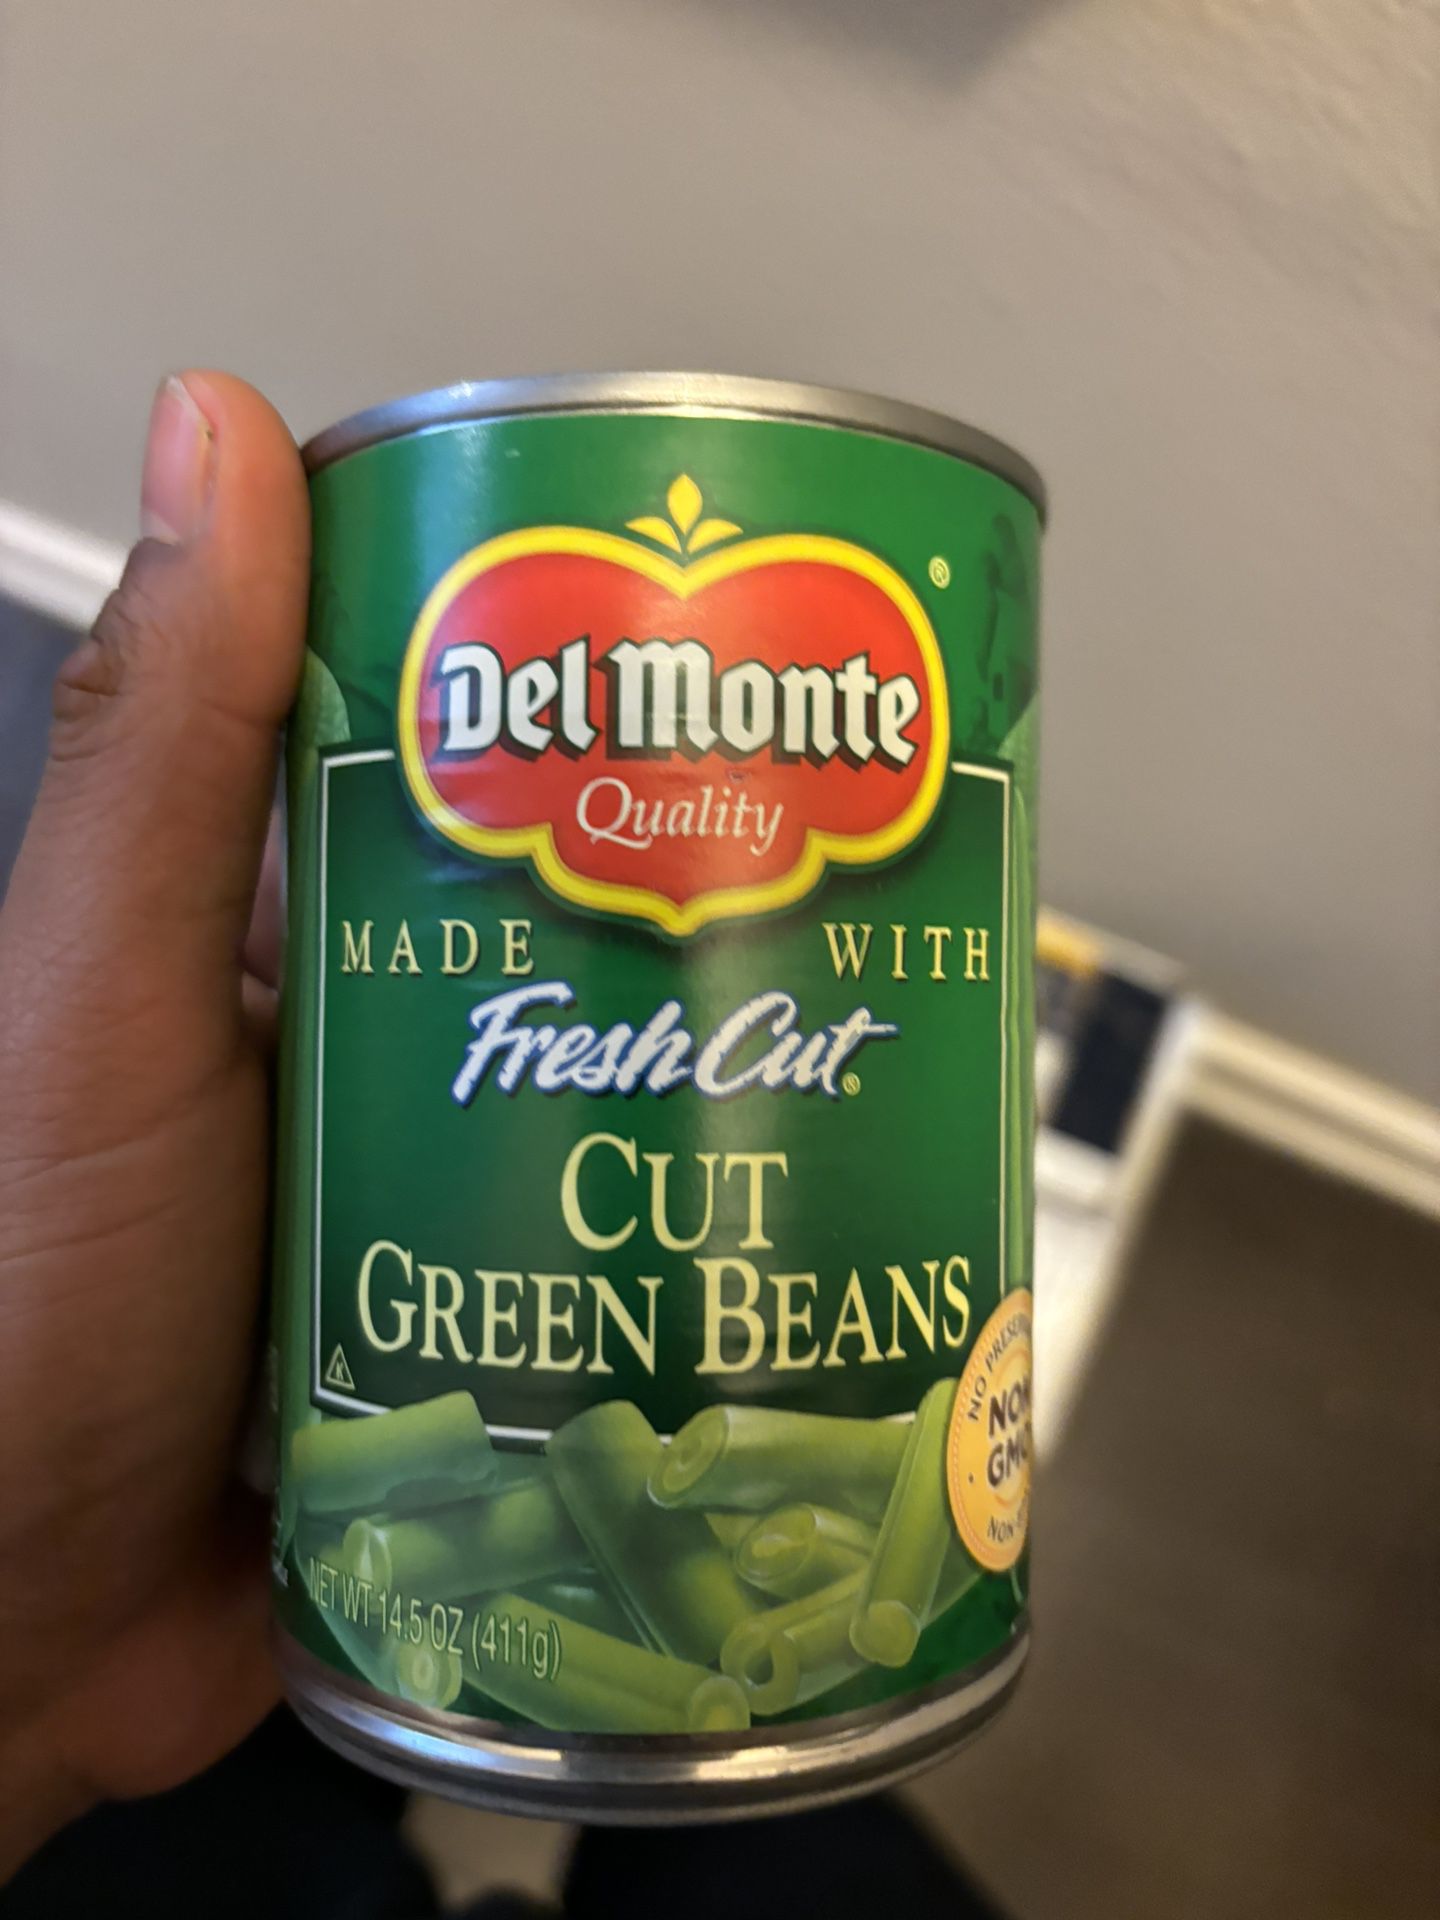 Cut Green Beans “Free”